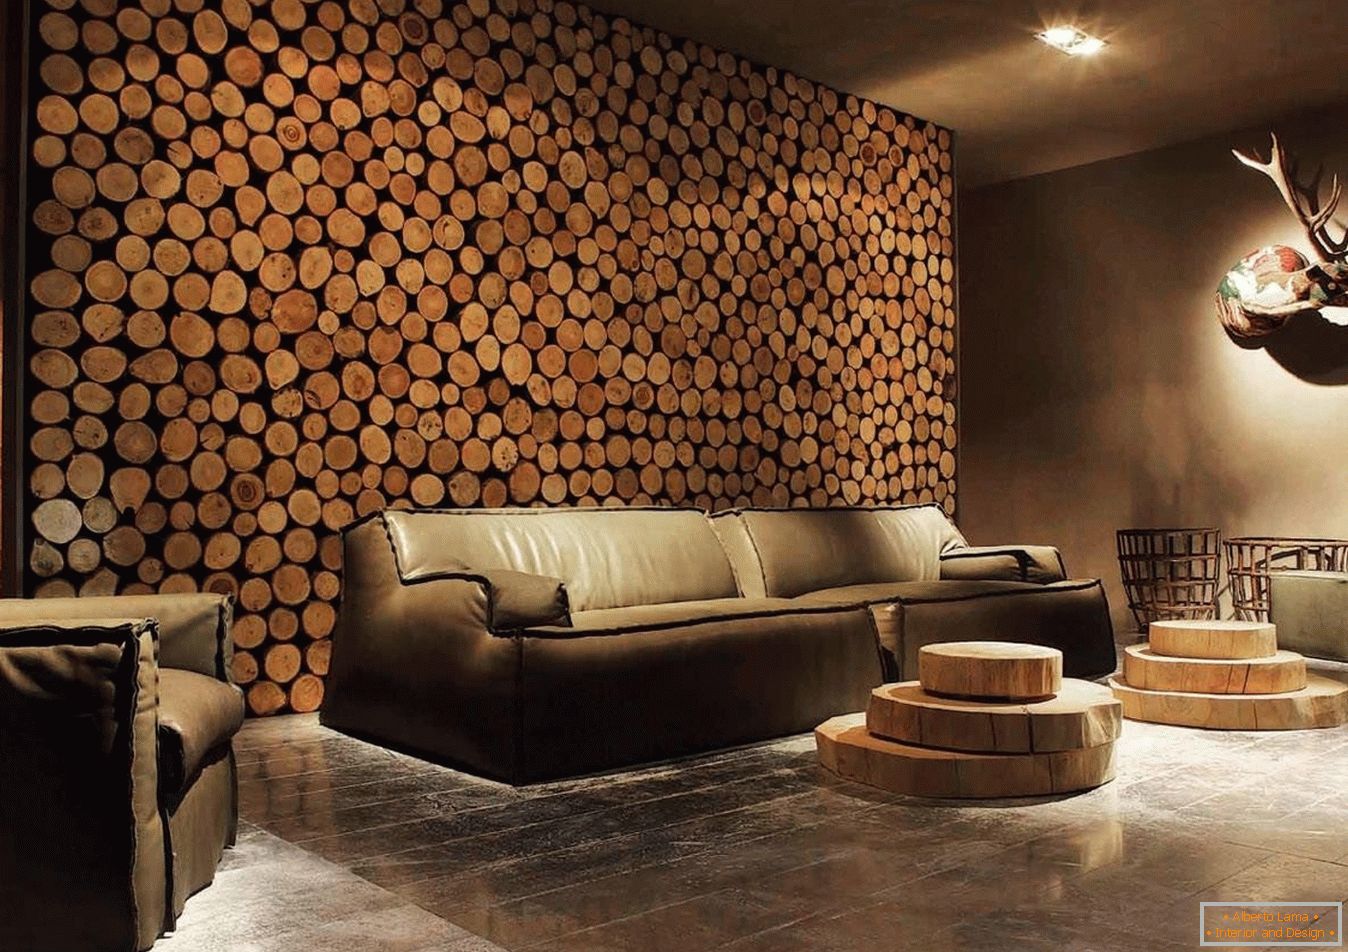 Drevené spialy z dreva ako dekorácie obývacej steny